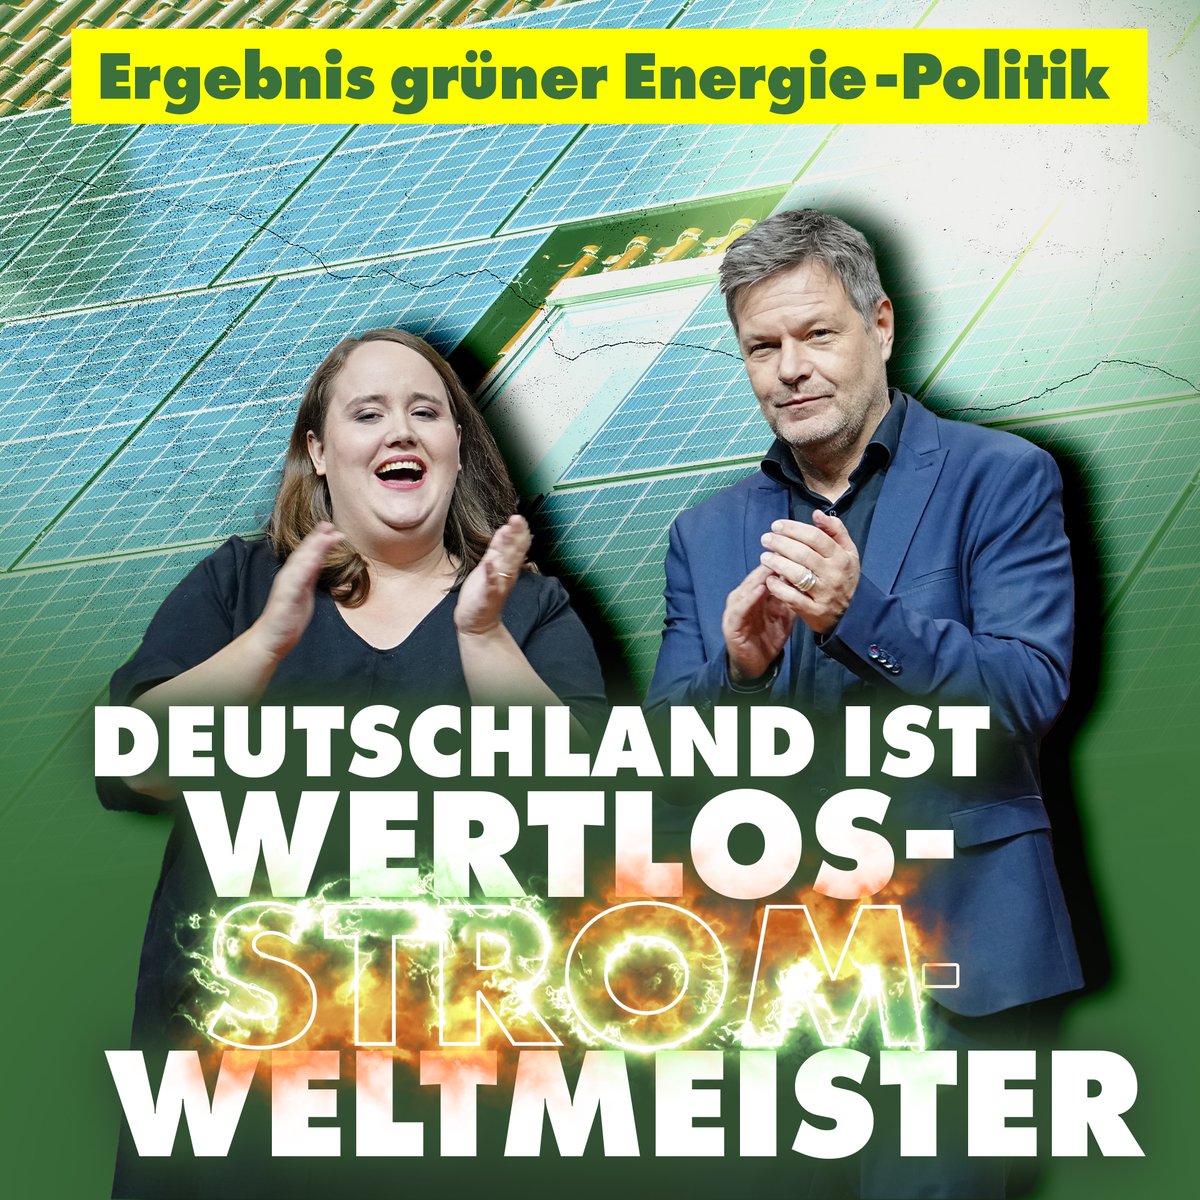 Wir sind mal wieder Negativ-Weltmeister. Und Stromkunden und Steuerzahler müssen für die katastrophale Energiepolitik der Grünen bluten.
nius.de/wirtschaft/erg…